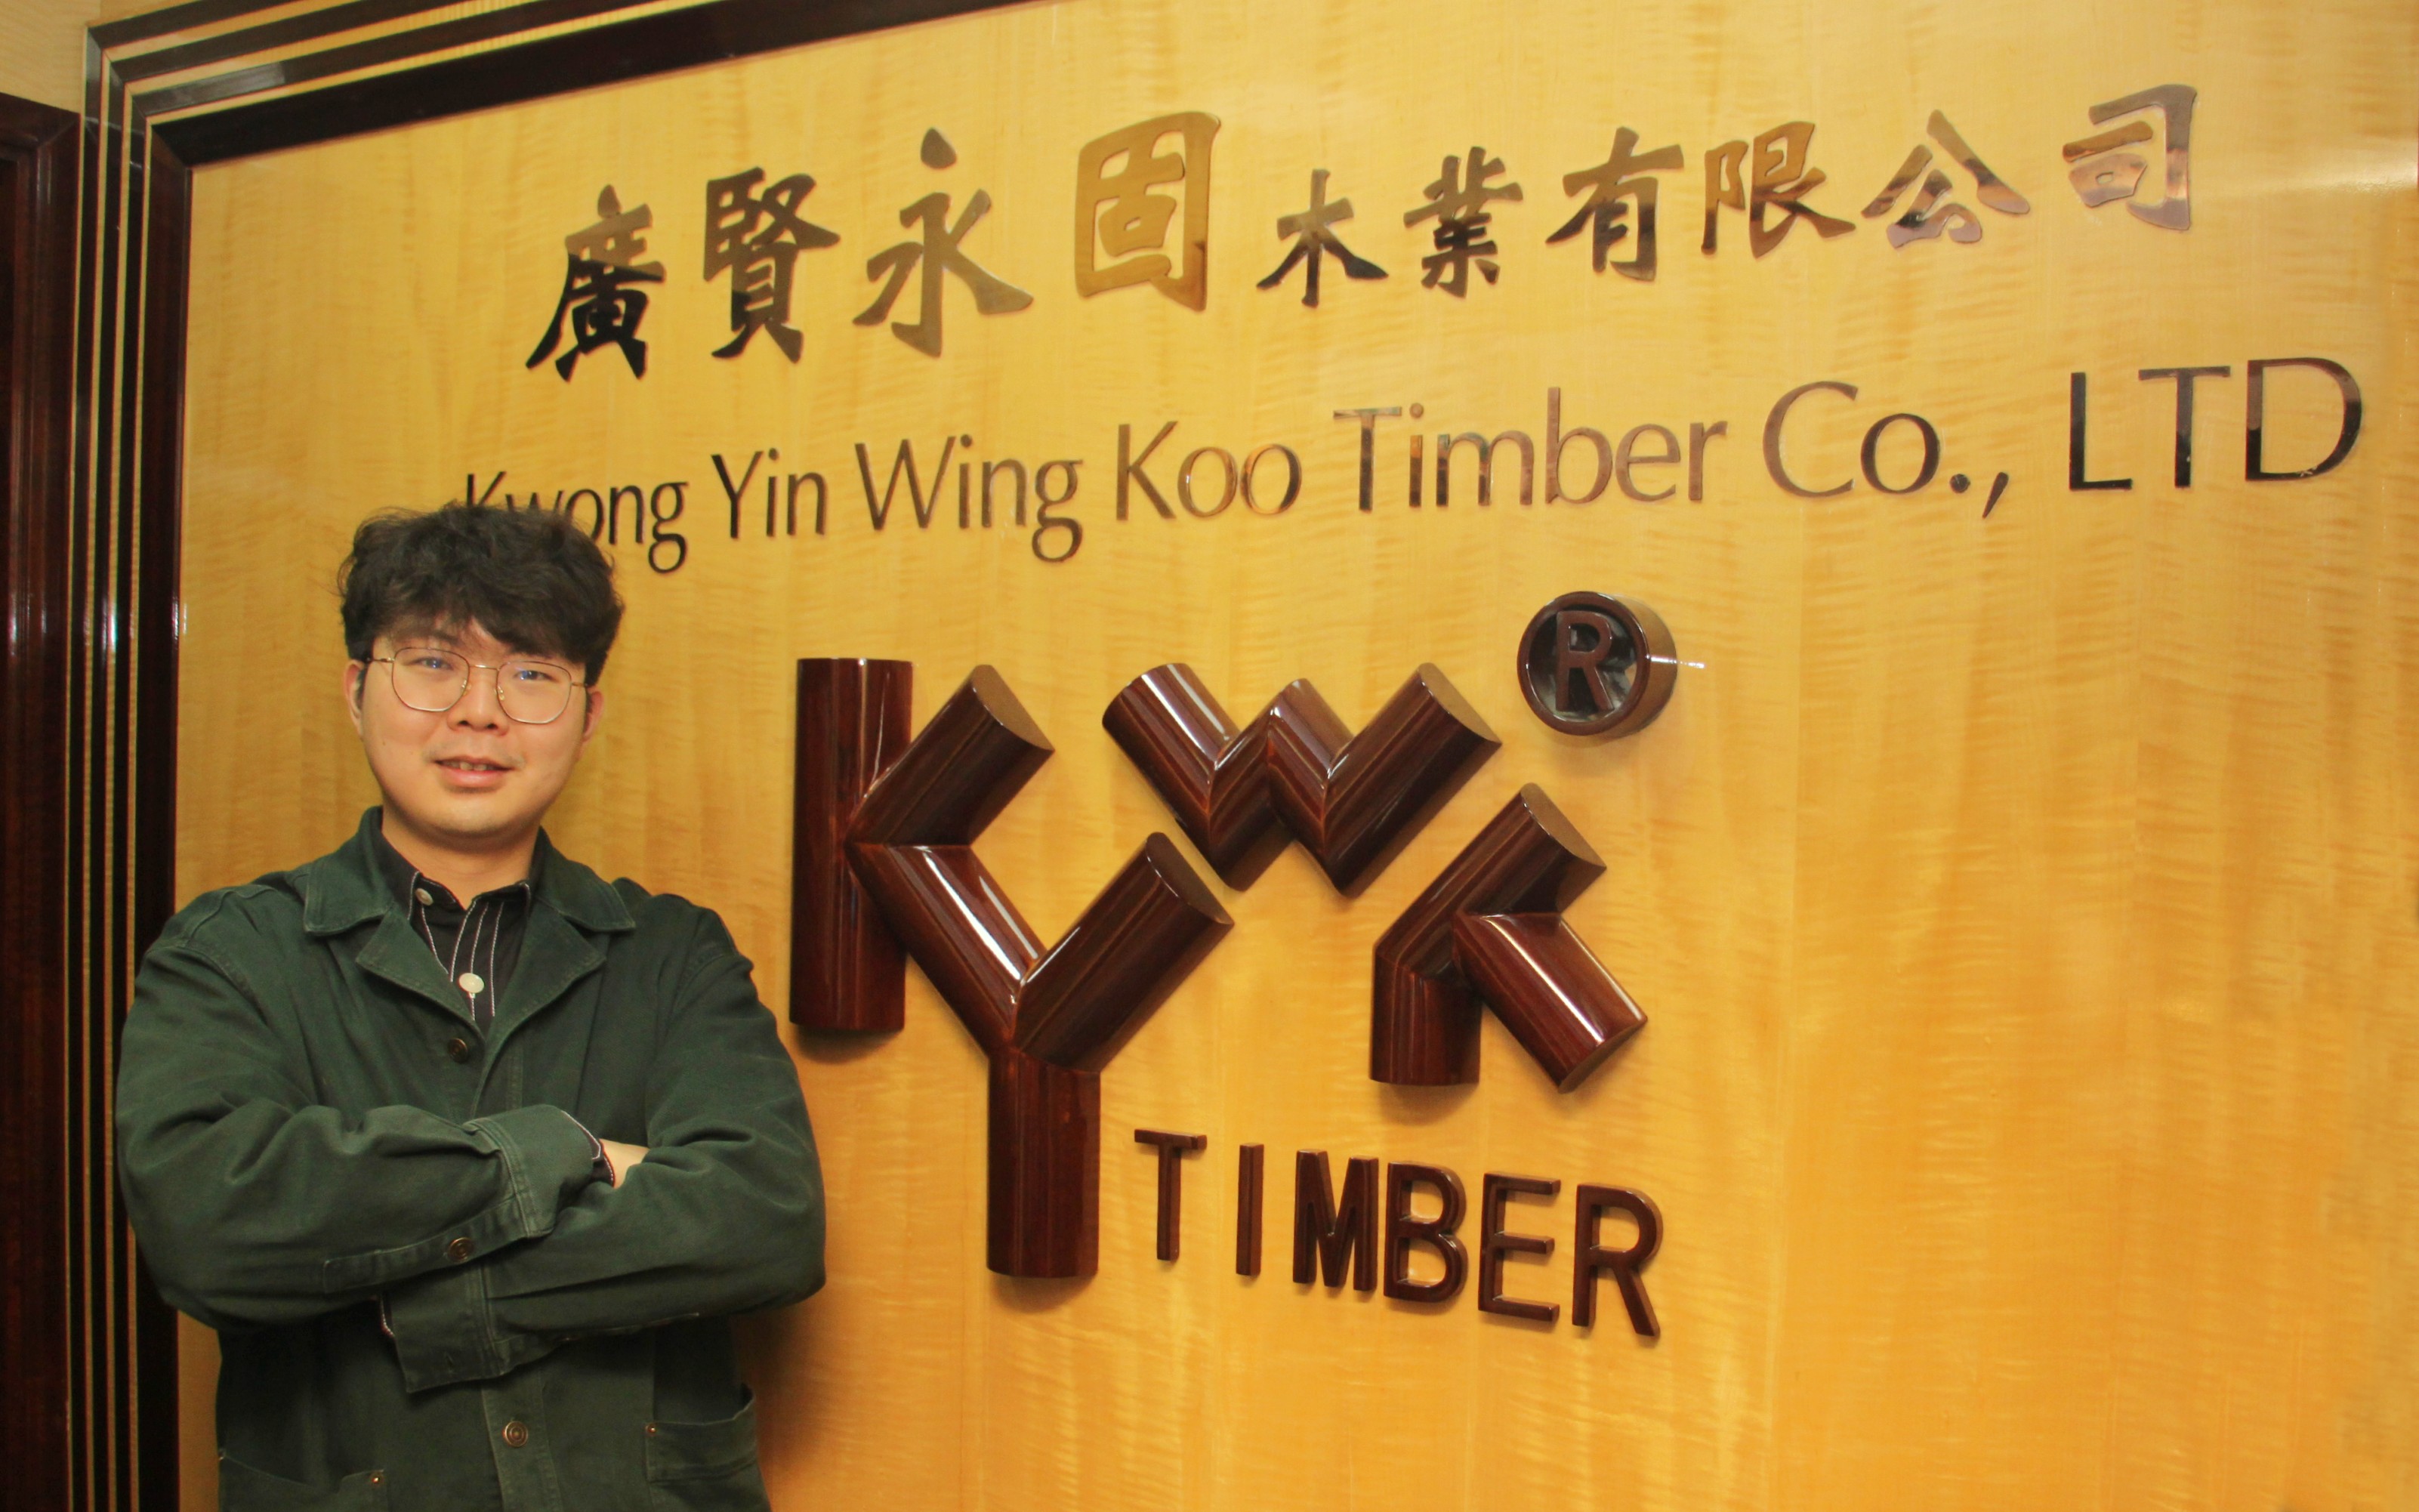 陳澔傳（Thomas）去年開始接手廣賢永固木業，立即為這門家族生意開展數碼轉型，提升在業內的競爭力。